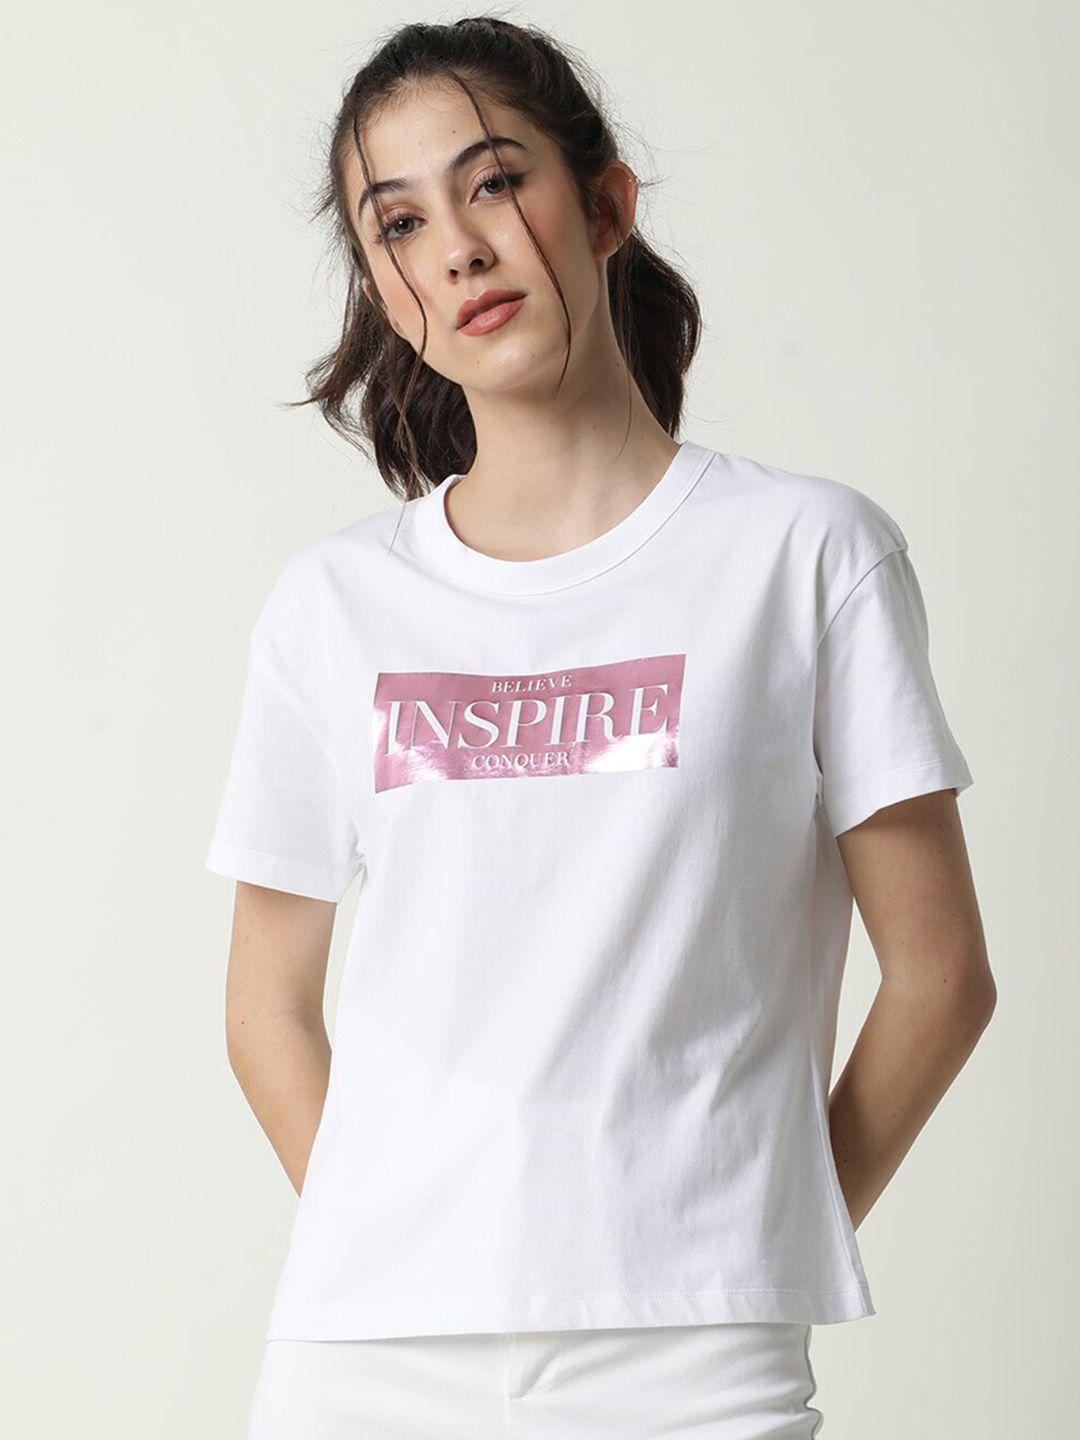 rareism women printed t-shirt